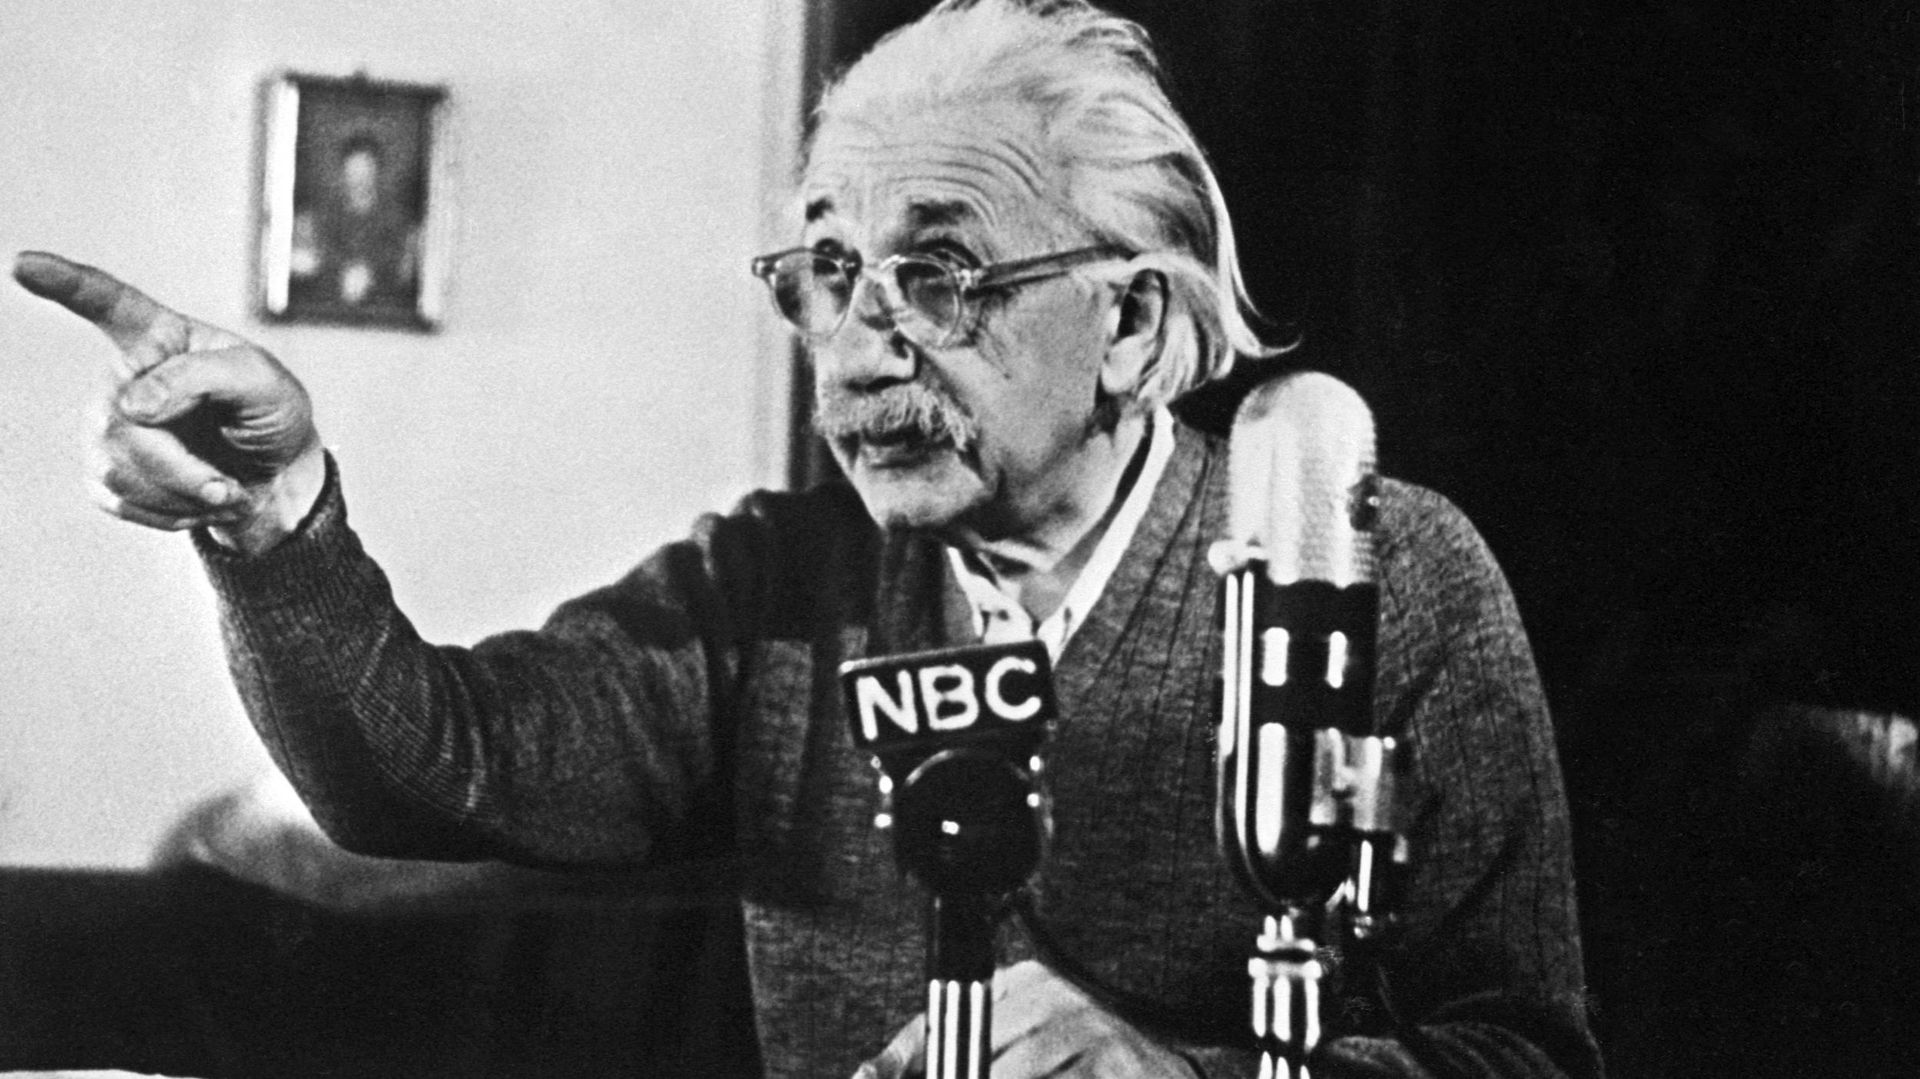 Albert Einstein déclare son opposition à la bombe atomique lors d'une conférence à Princeton, USA, le 14 février 1950.